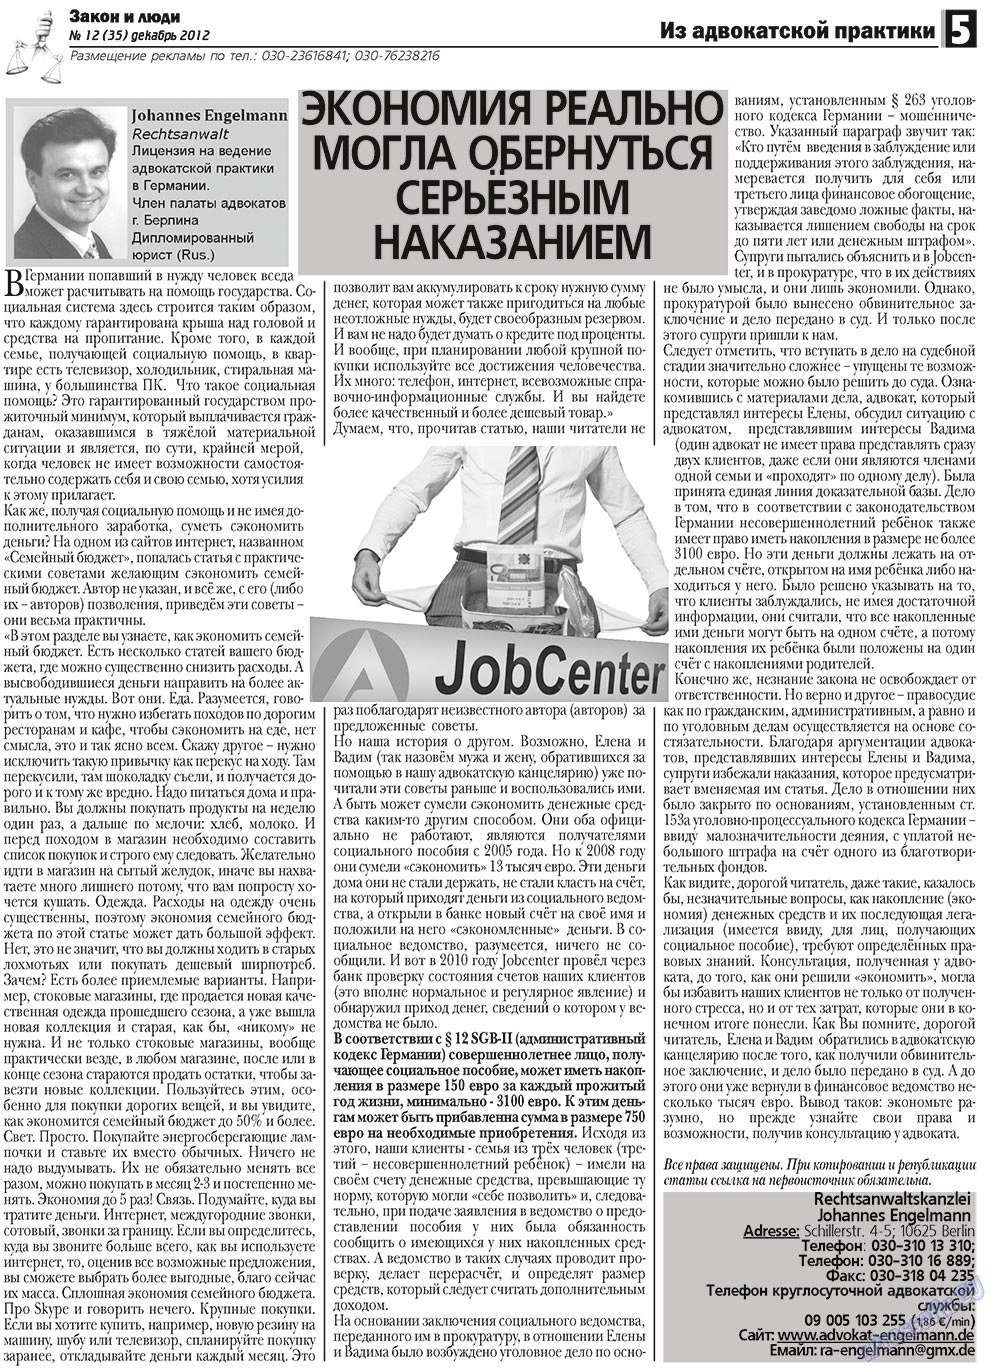 Закон и люди, газета. 2012 №12 стр.5